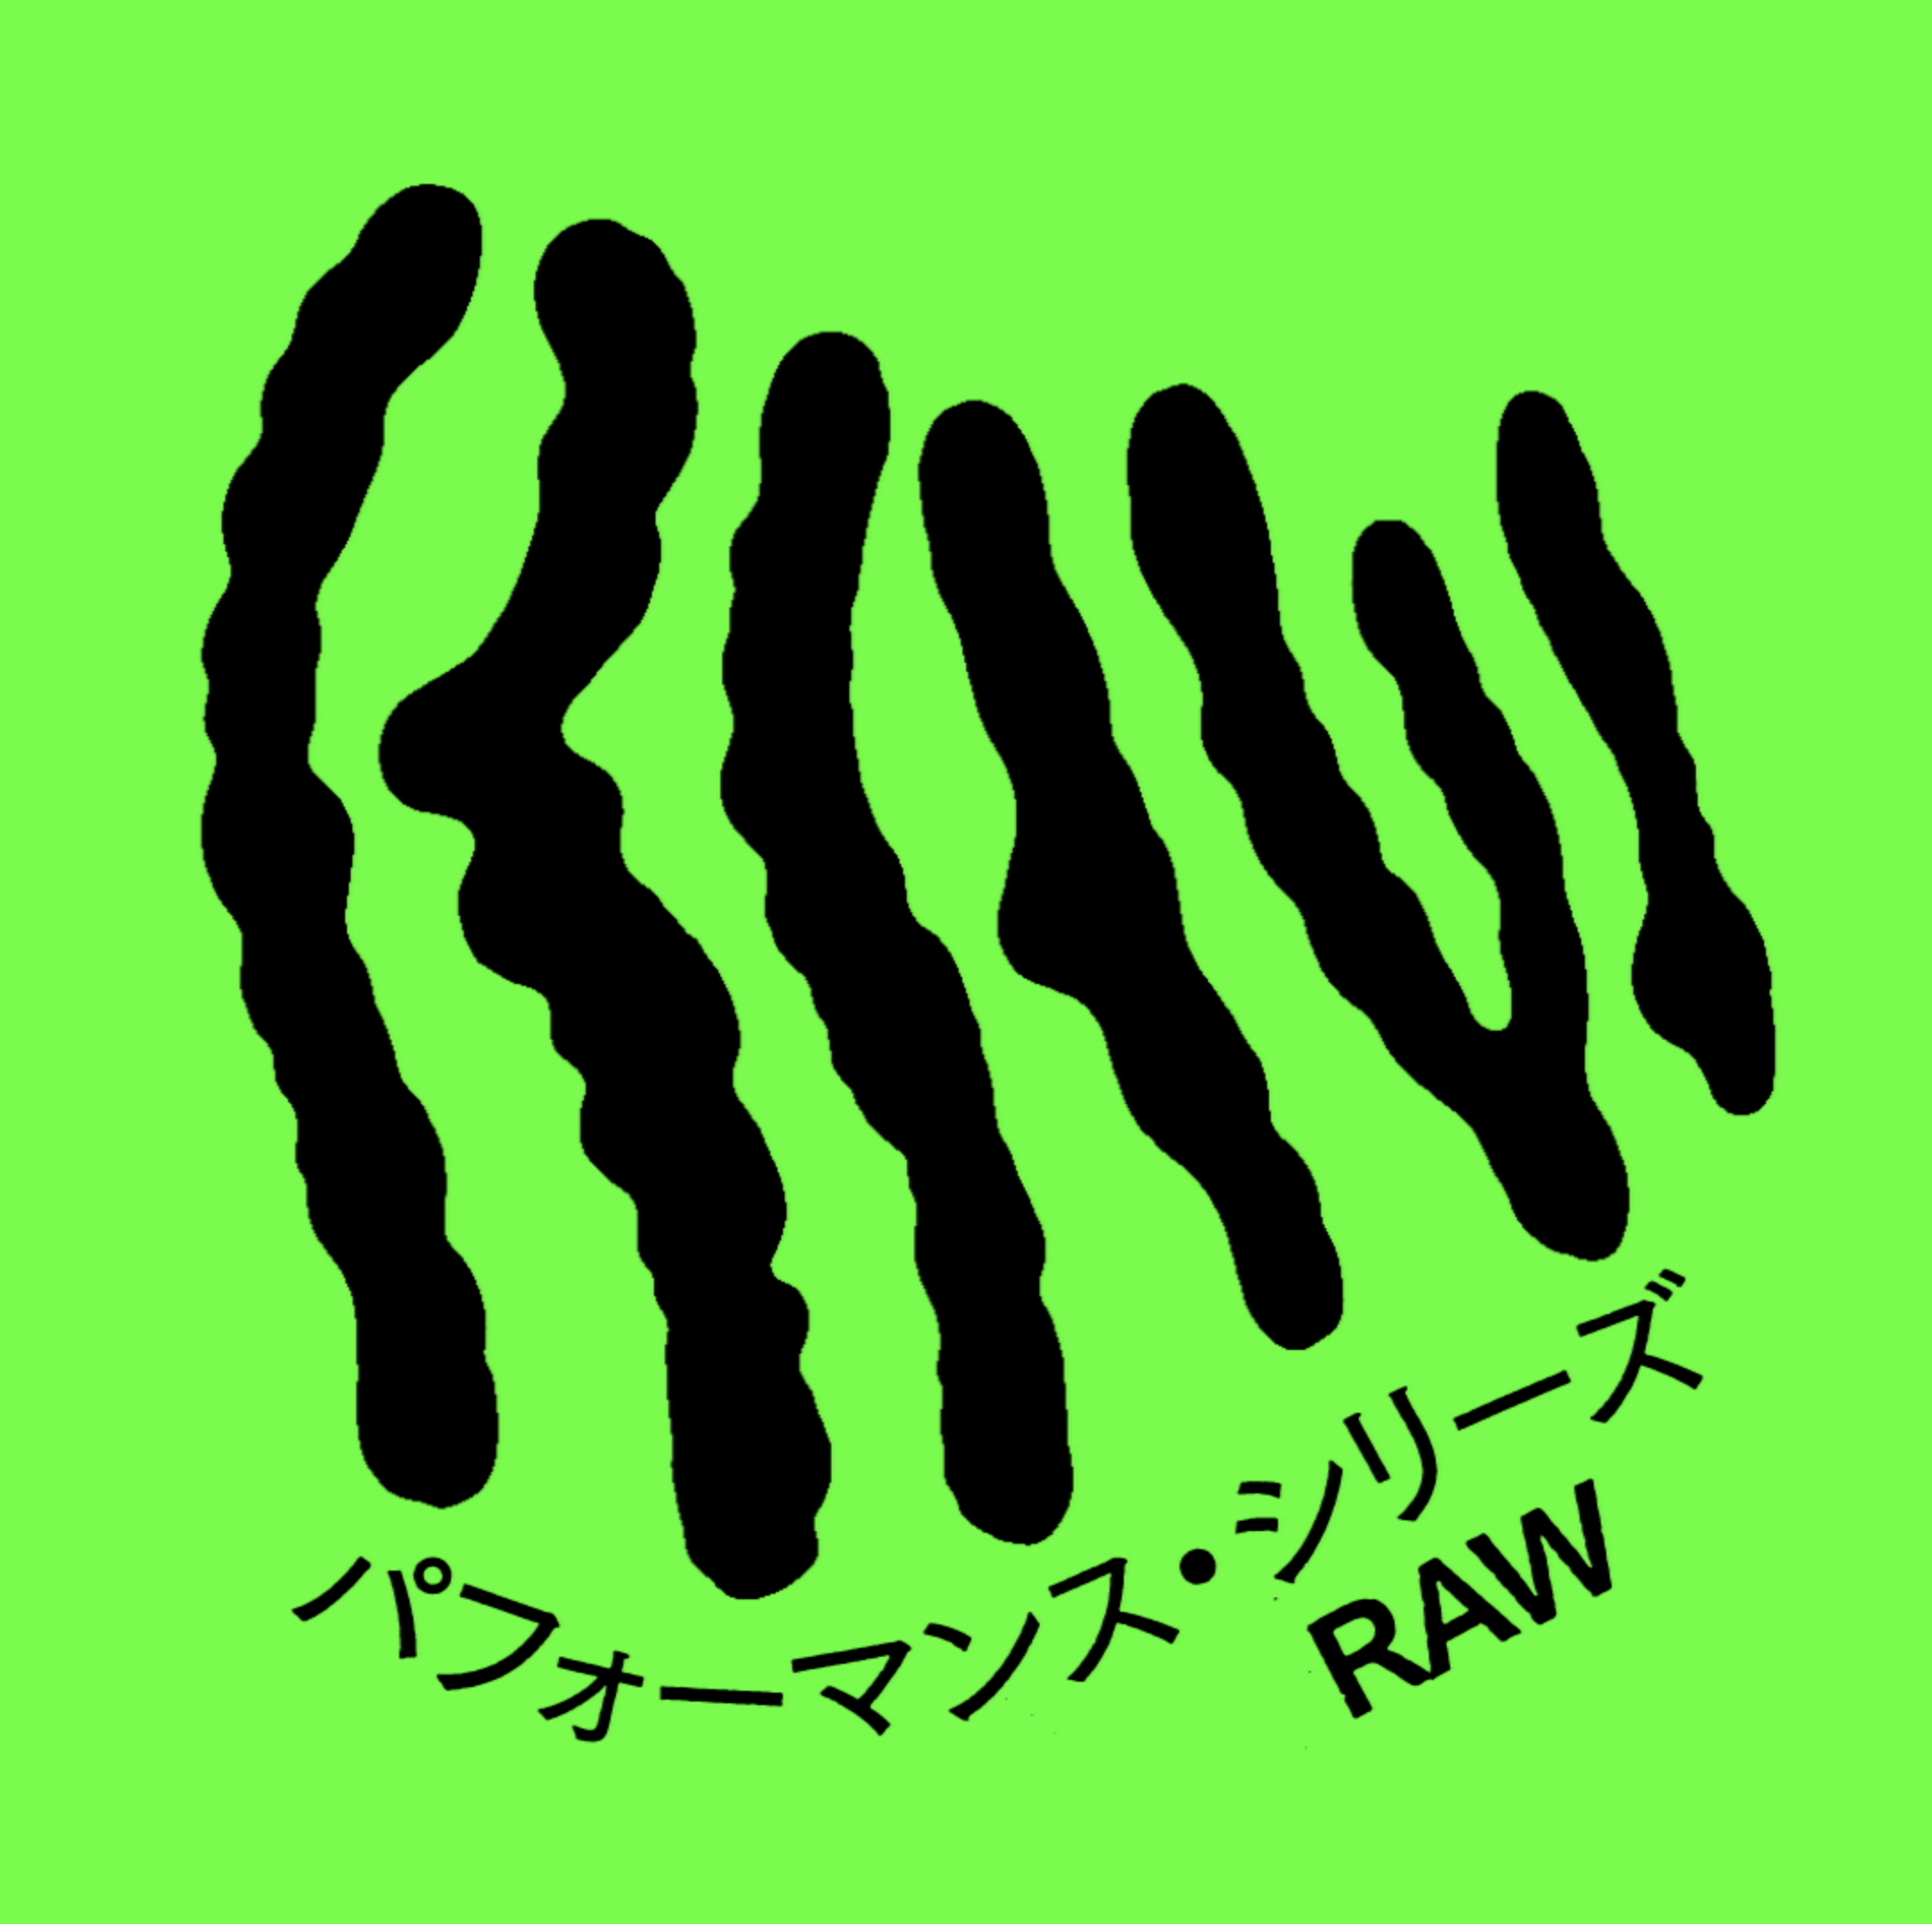 パフォーマンス・シリーズ「RAW」01<b>【配信中】</b>